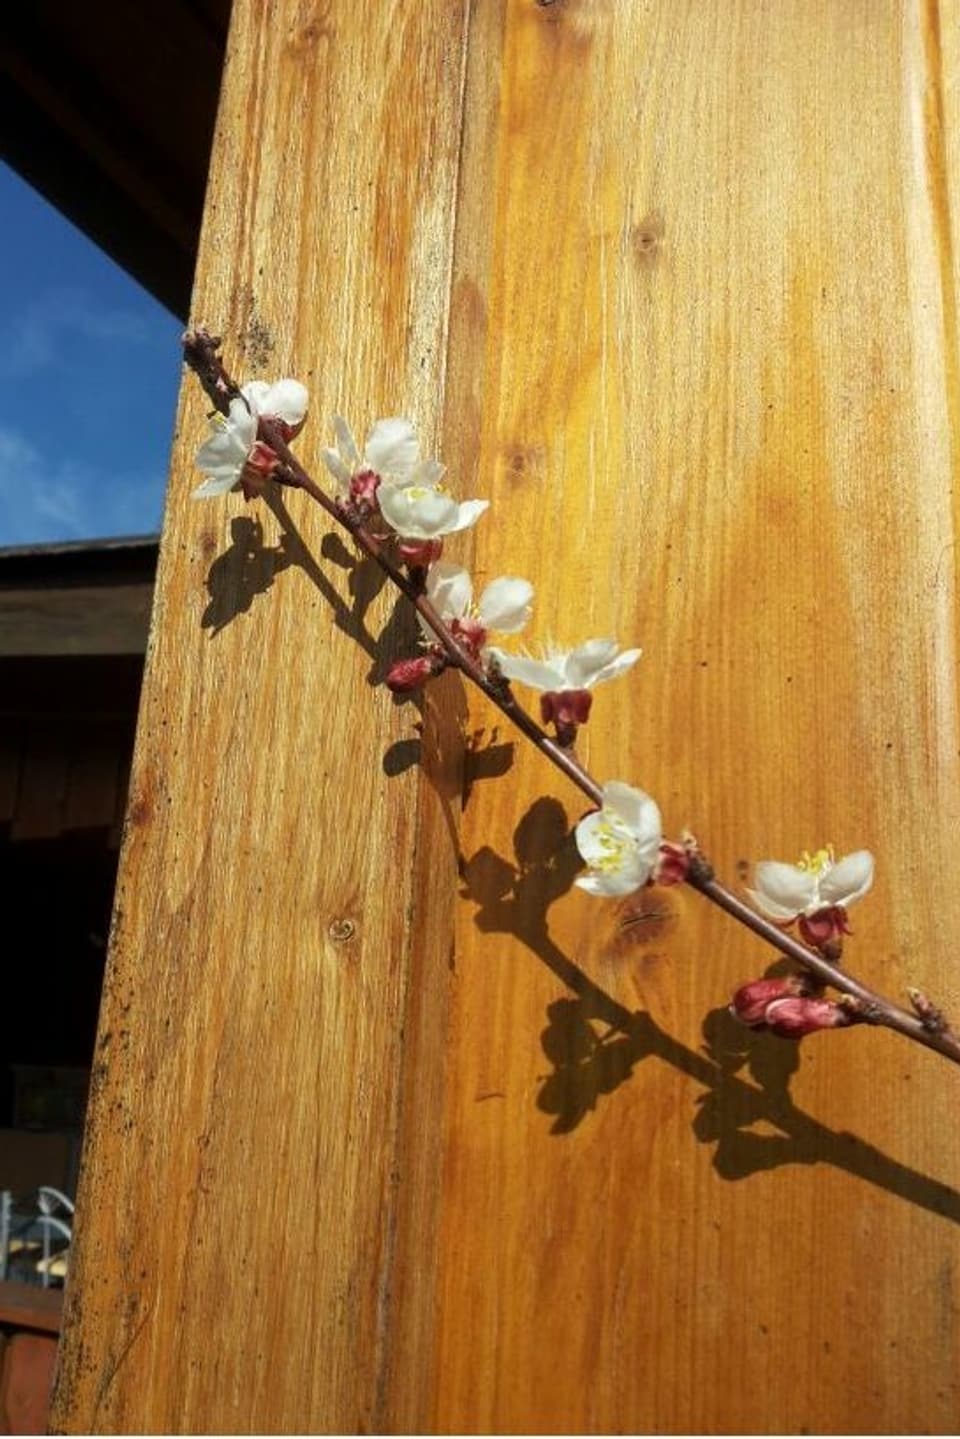 Aprikosenbaum-Zweig sonnt sich an Holzfassade.